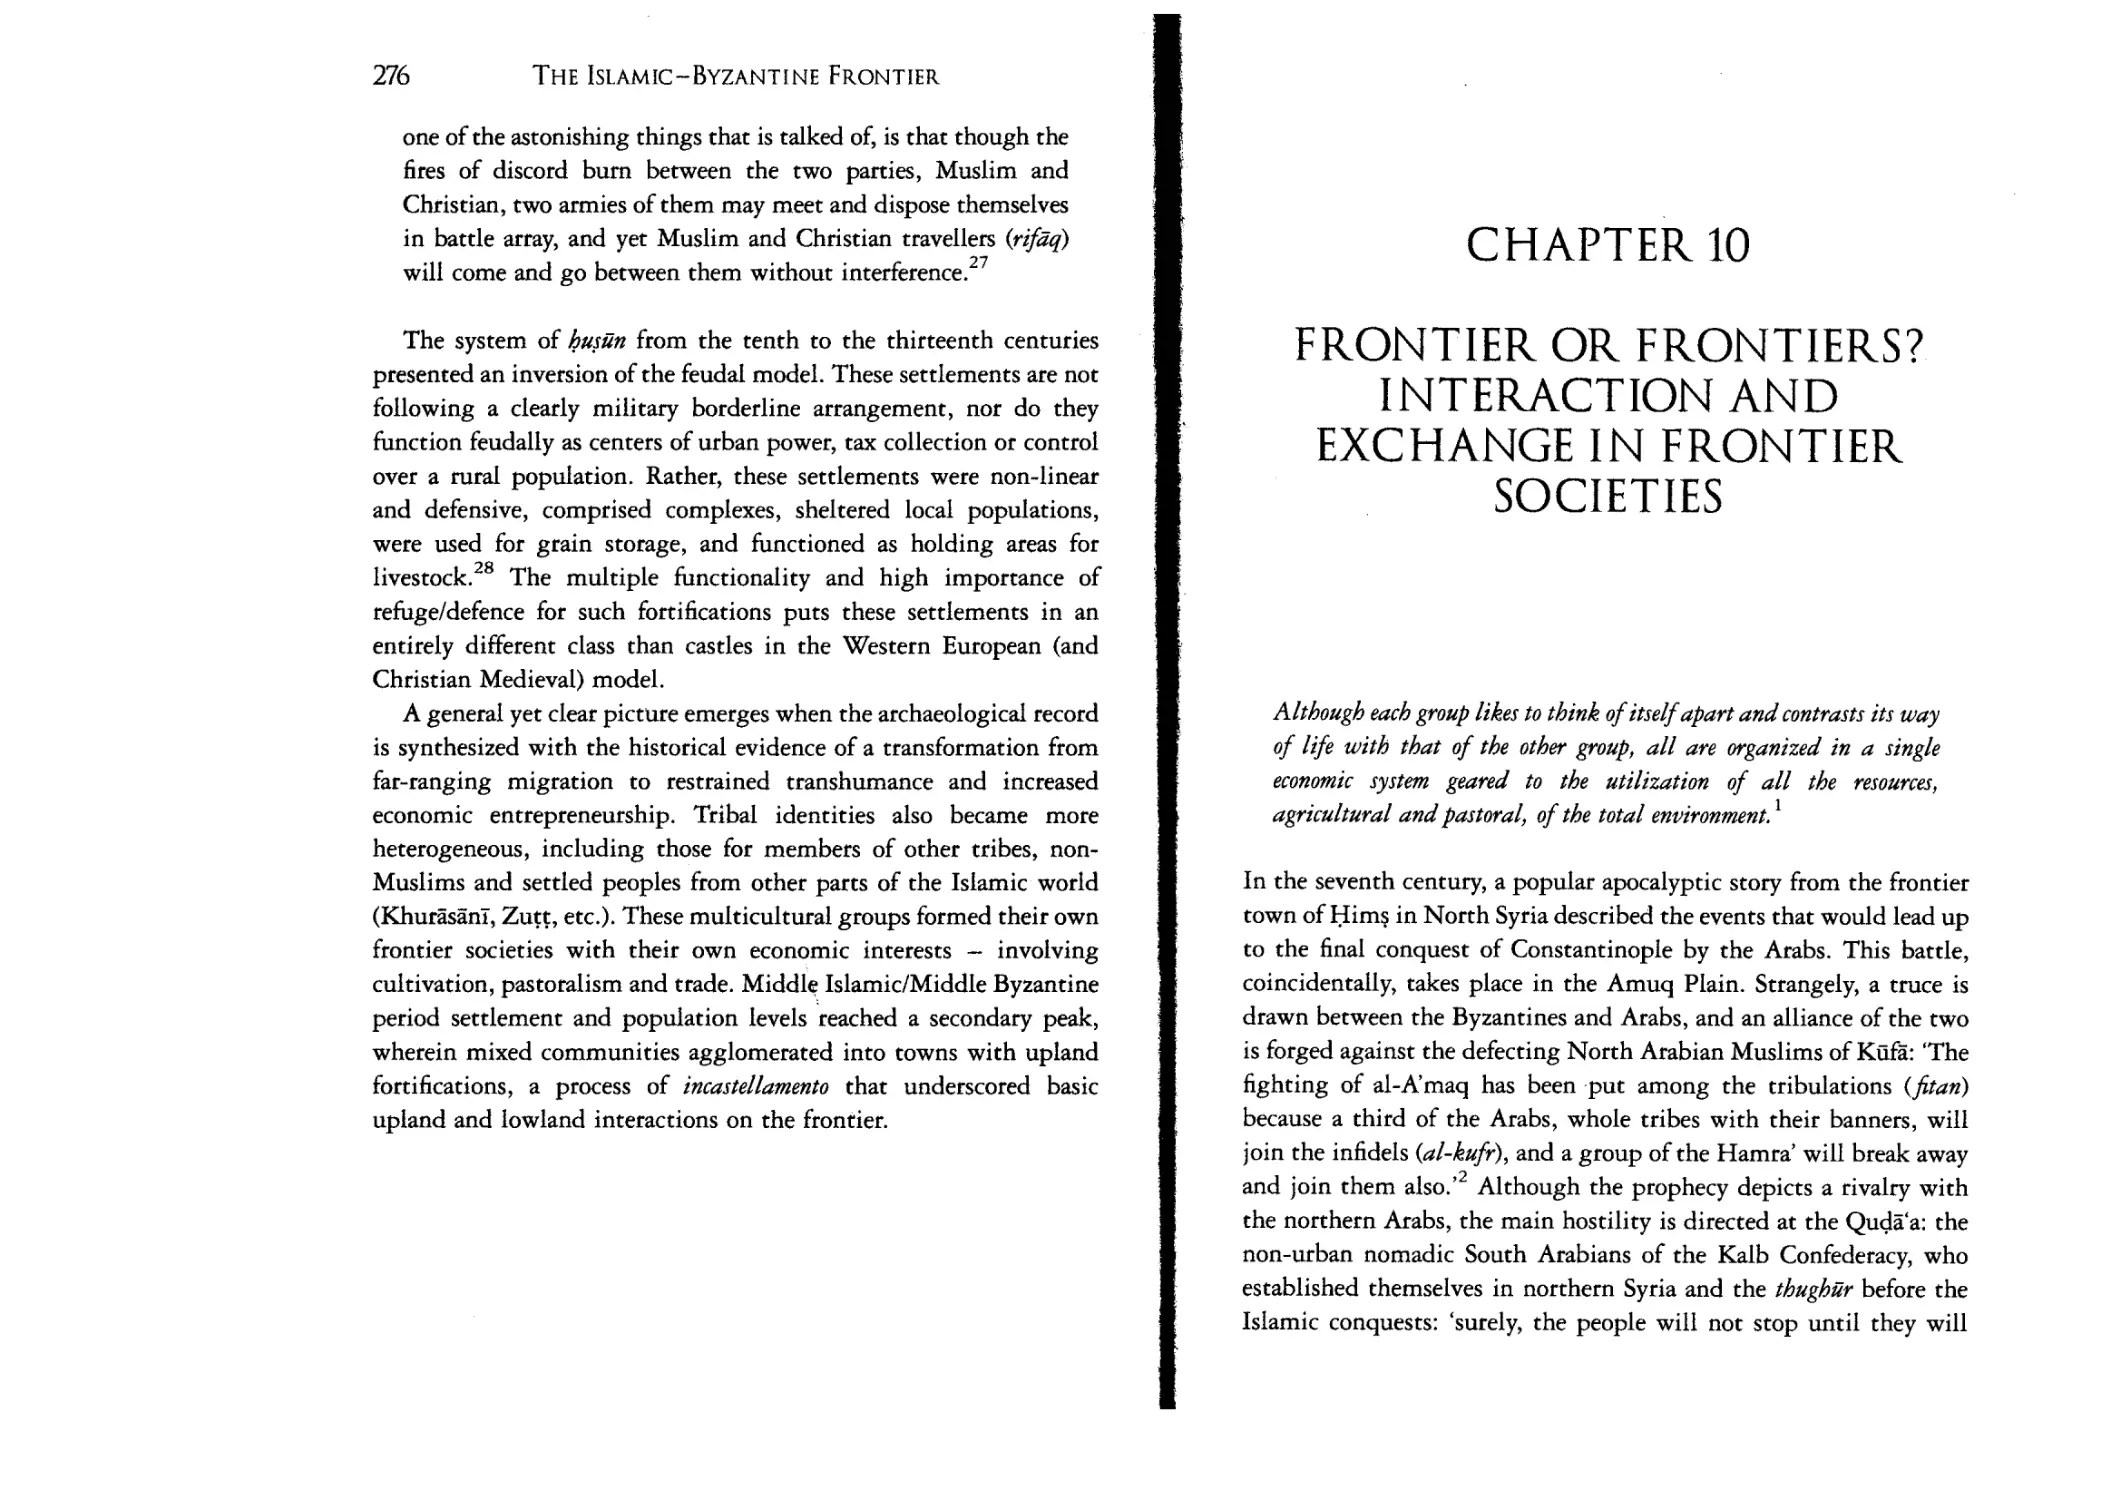 10. Frontier or Frontiers? Interaction and Exchange in
Frontier Societies